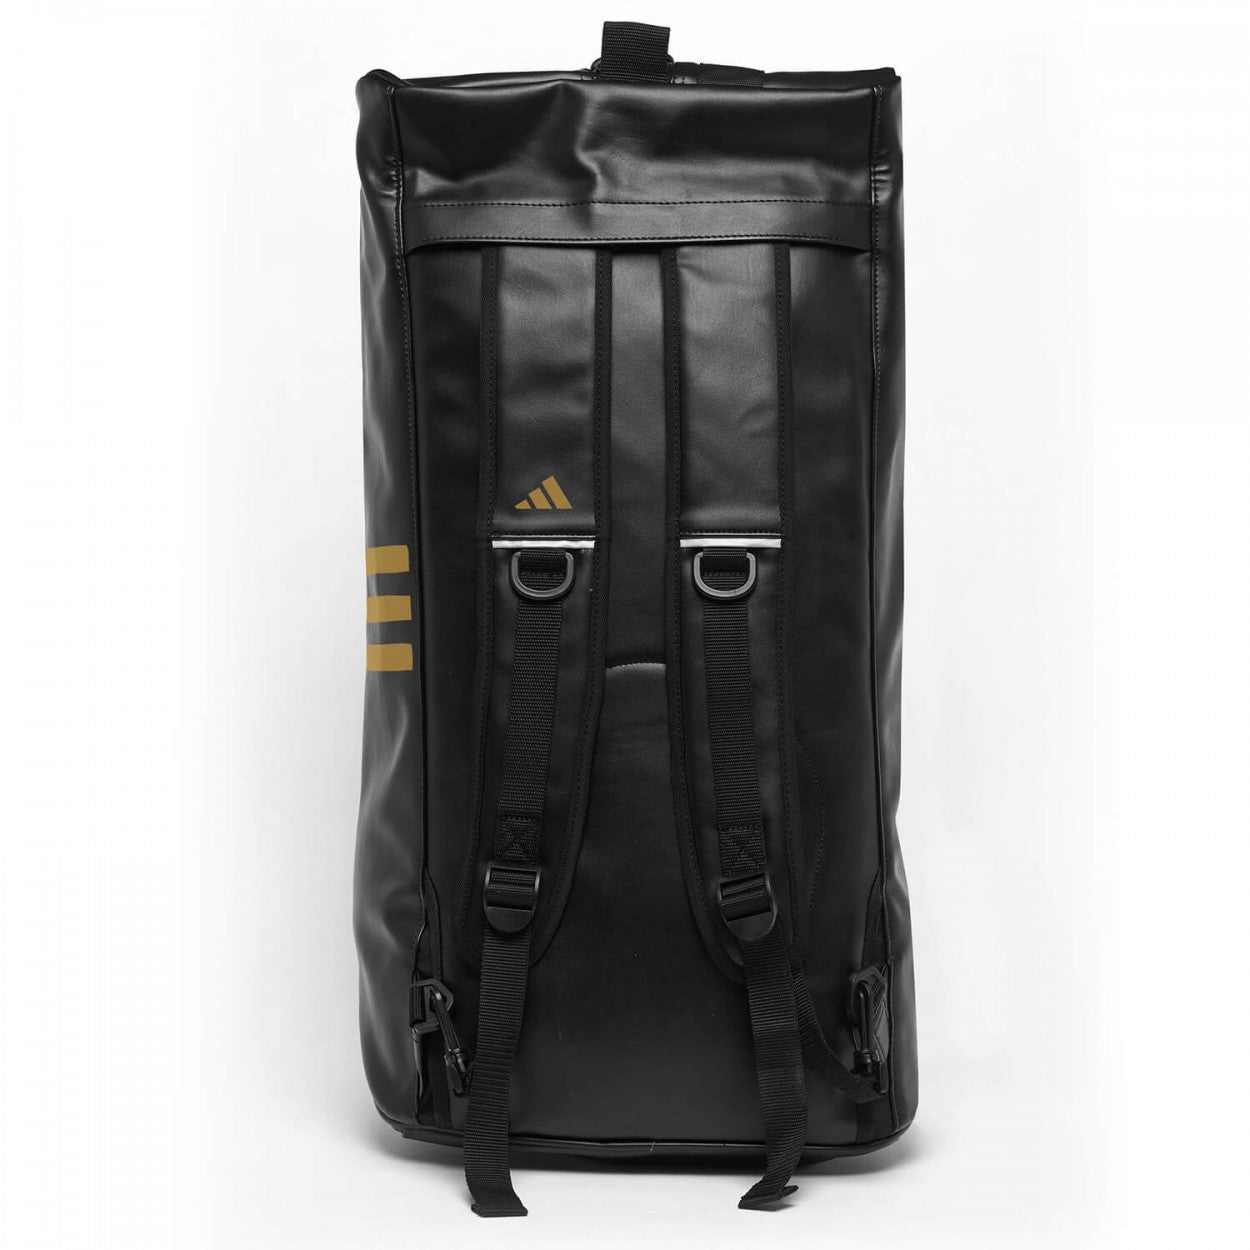 Αθλητική Τσάντα adidas 3 IN 1 TEAMBAG (62x31x31cm),  Μαύρο/Άσπρο